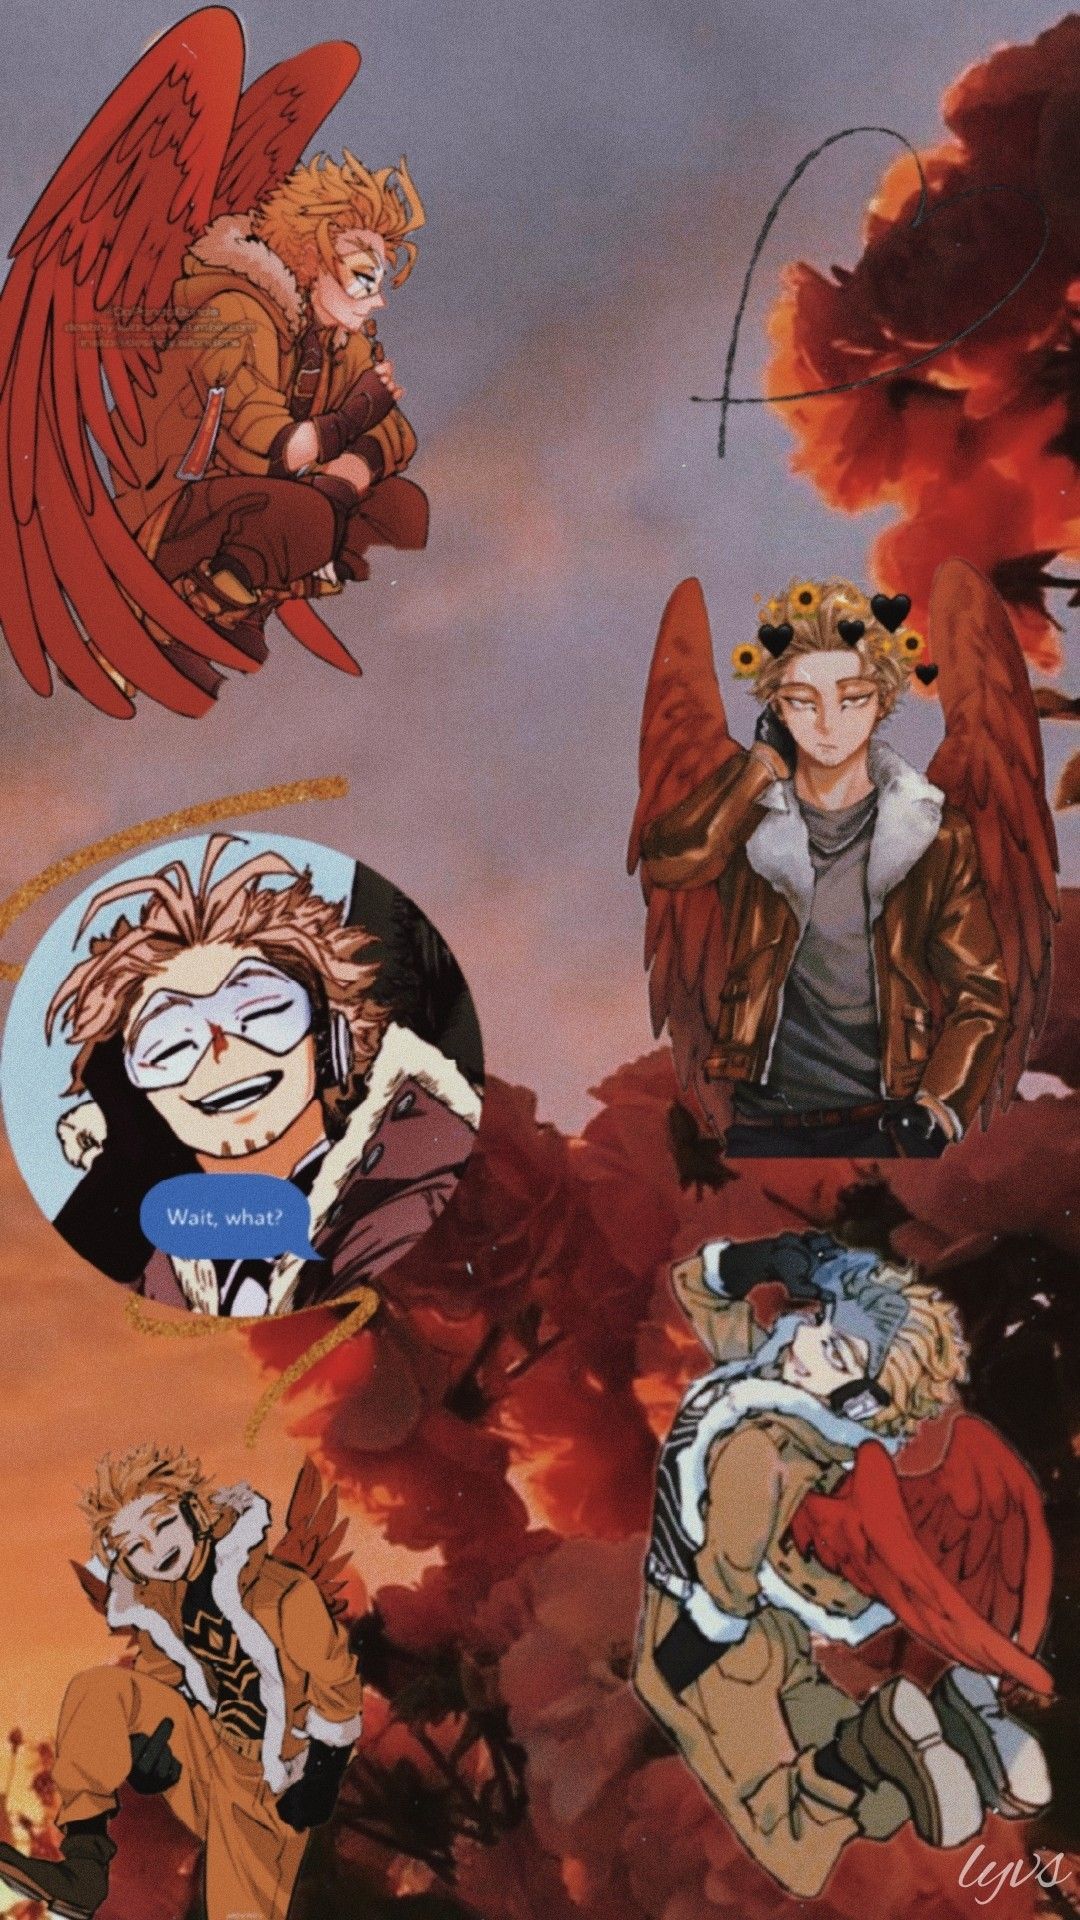 Hawks wallpaper. Anime wallpaper, Hero wallpaper, Anime